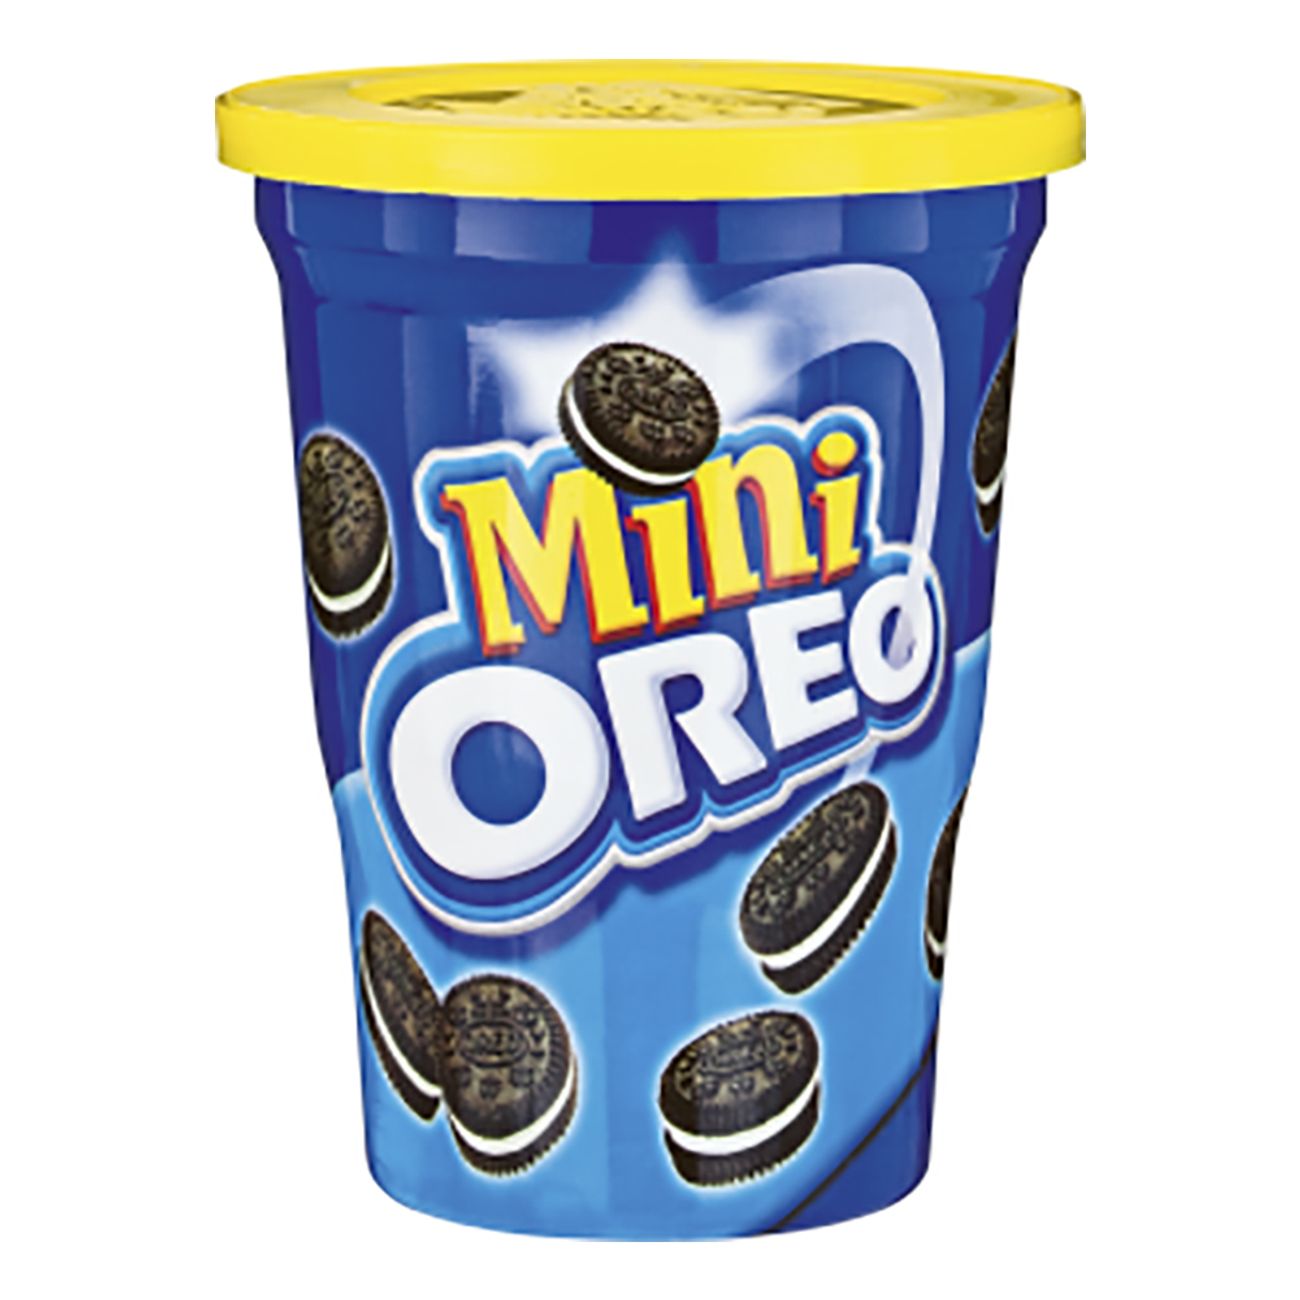 oreo-cookies-mini-78907-1